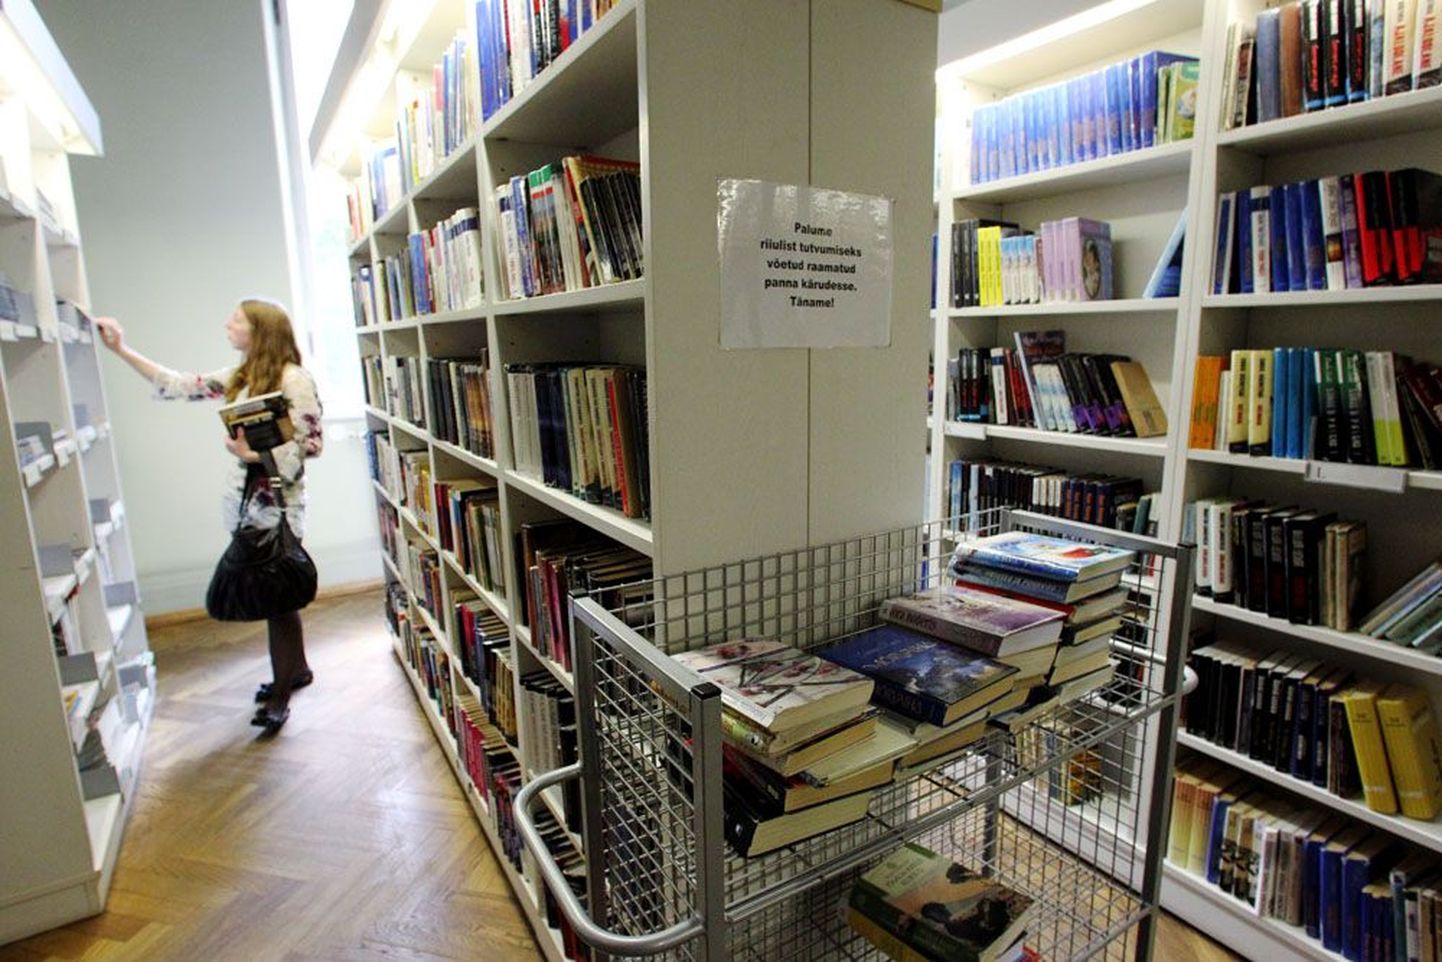 Tallinna Keskraamatukogu jätkab tavapärast tööd. Kuigi mõned nende harukogudest kollektiivpuhkavad, avas rekonstrueerimistöödeks Rahvusraamatukogu esmaspäeval keskraamatukogus teeninduspunkti.